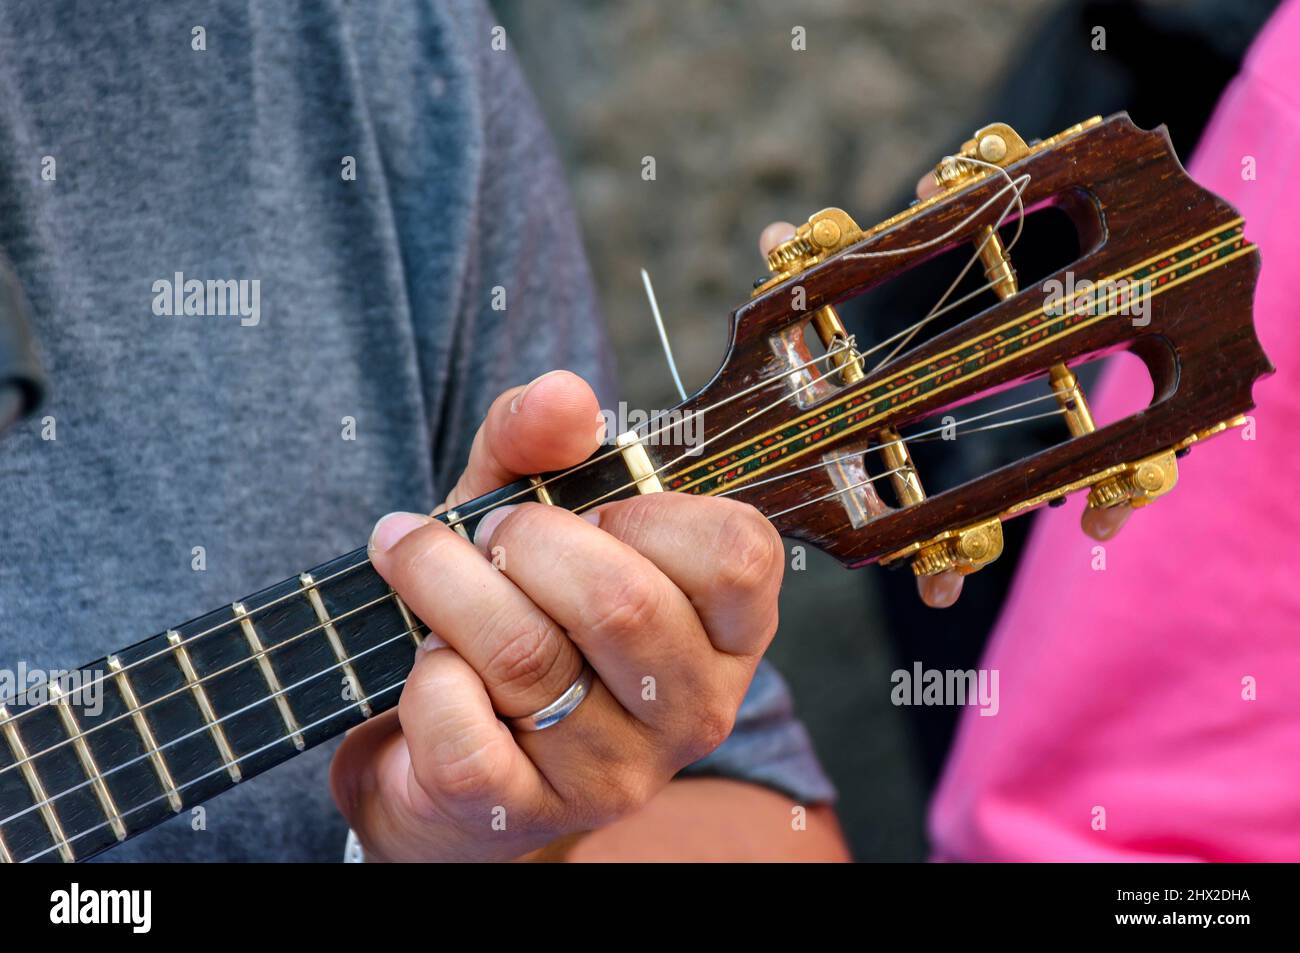 Kleine Gitarre mit vier Saiten, in Brasilien Cavaquinha genannt und  traditionell in den Stilen von Samba und Chorinha verwendet Stockfotografie  - Alamy